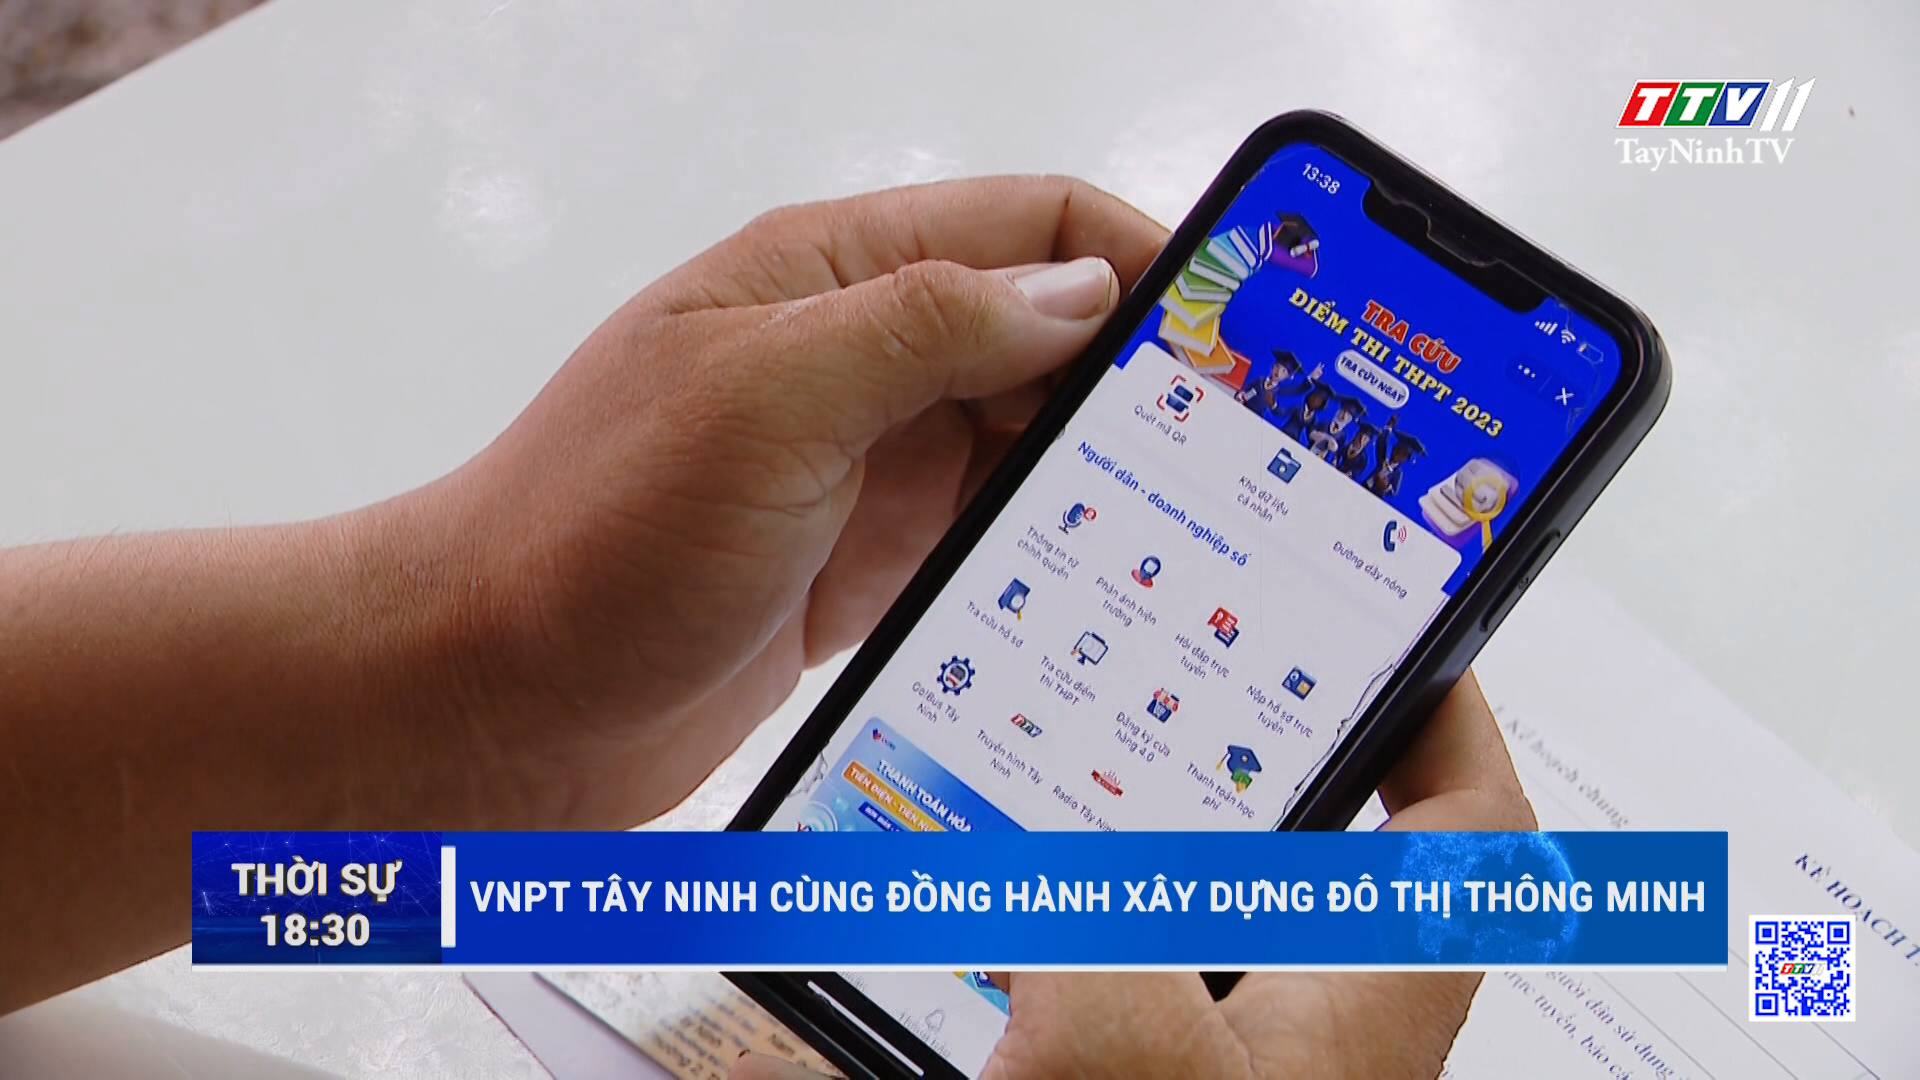 VNPT Tây Ninh cùng đồng hành xây dựng đô thị thông minh | TayNinhTV